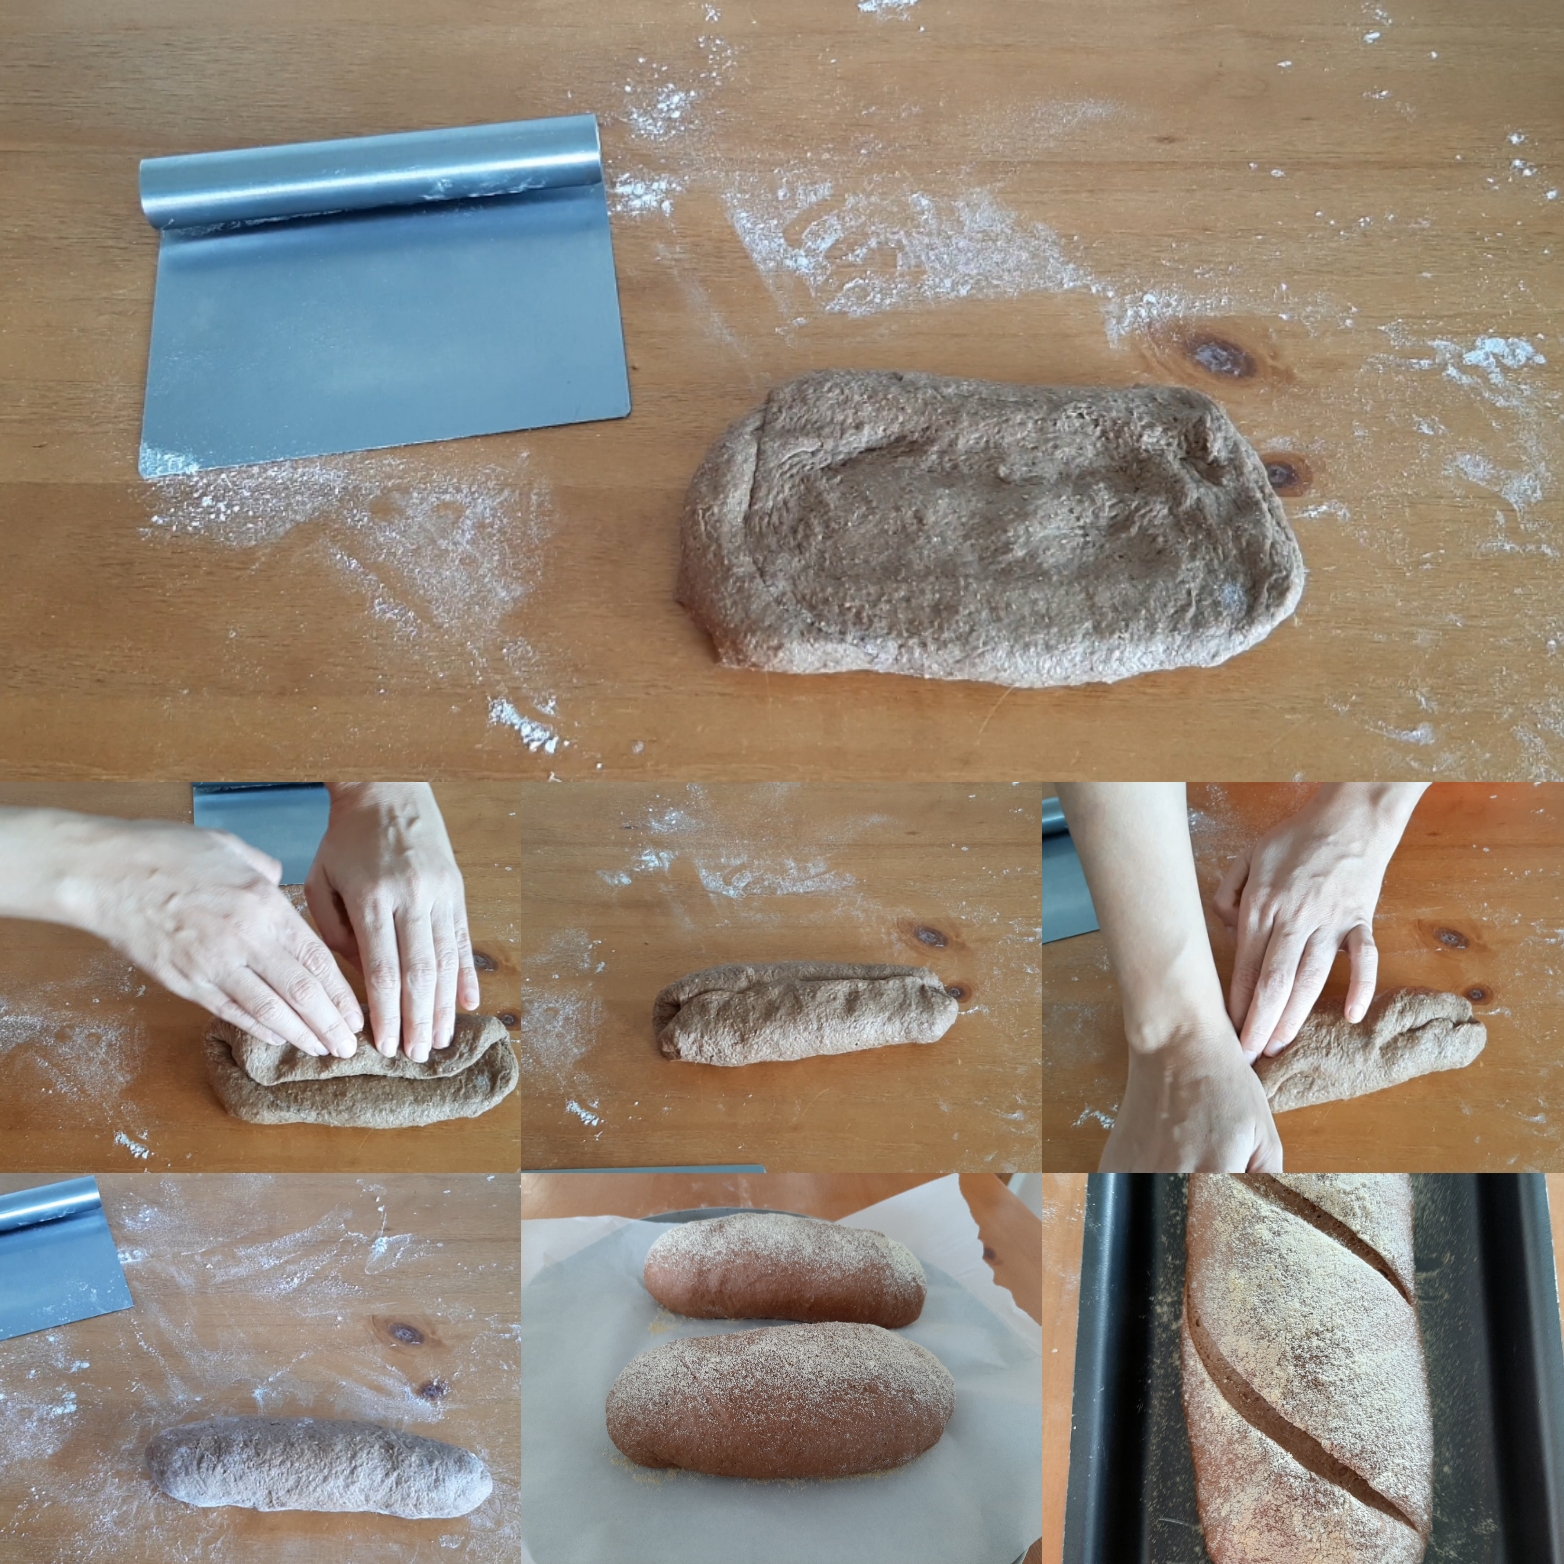 modelagem da massa do pão australiano